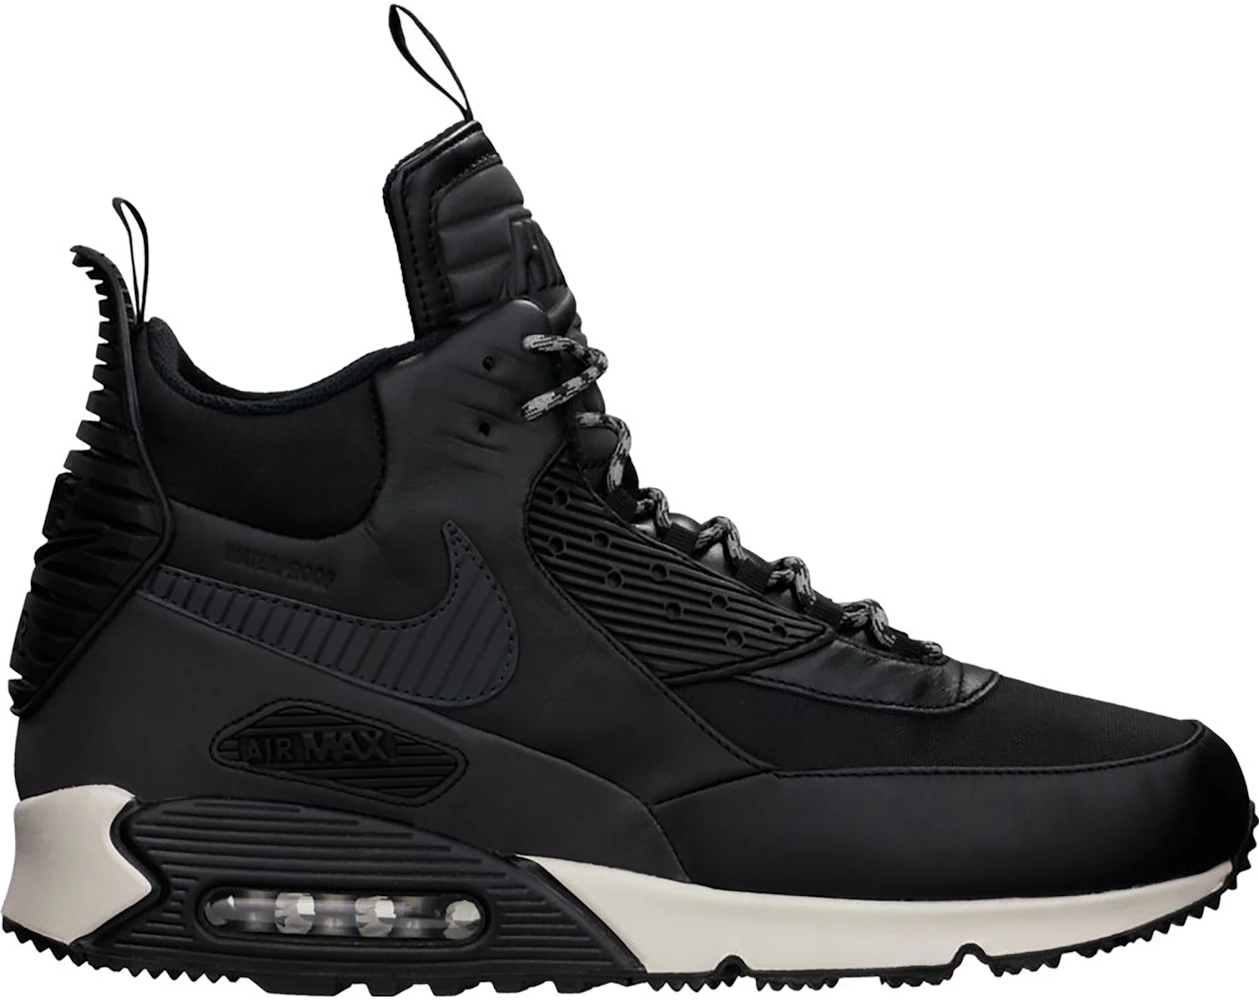 llamada divorcio pasión Nike Air Max 90 Sneakerboot Black Magnet Grey Hombre - 684714-001 - MX